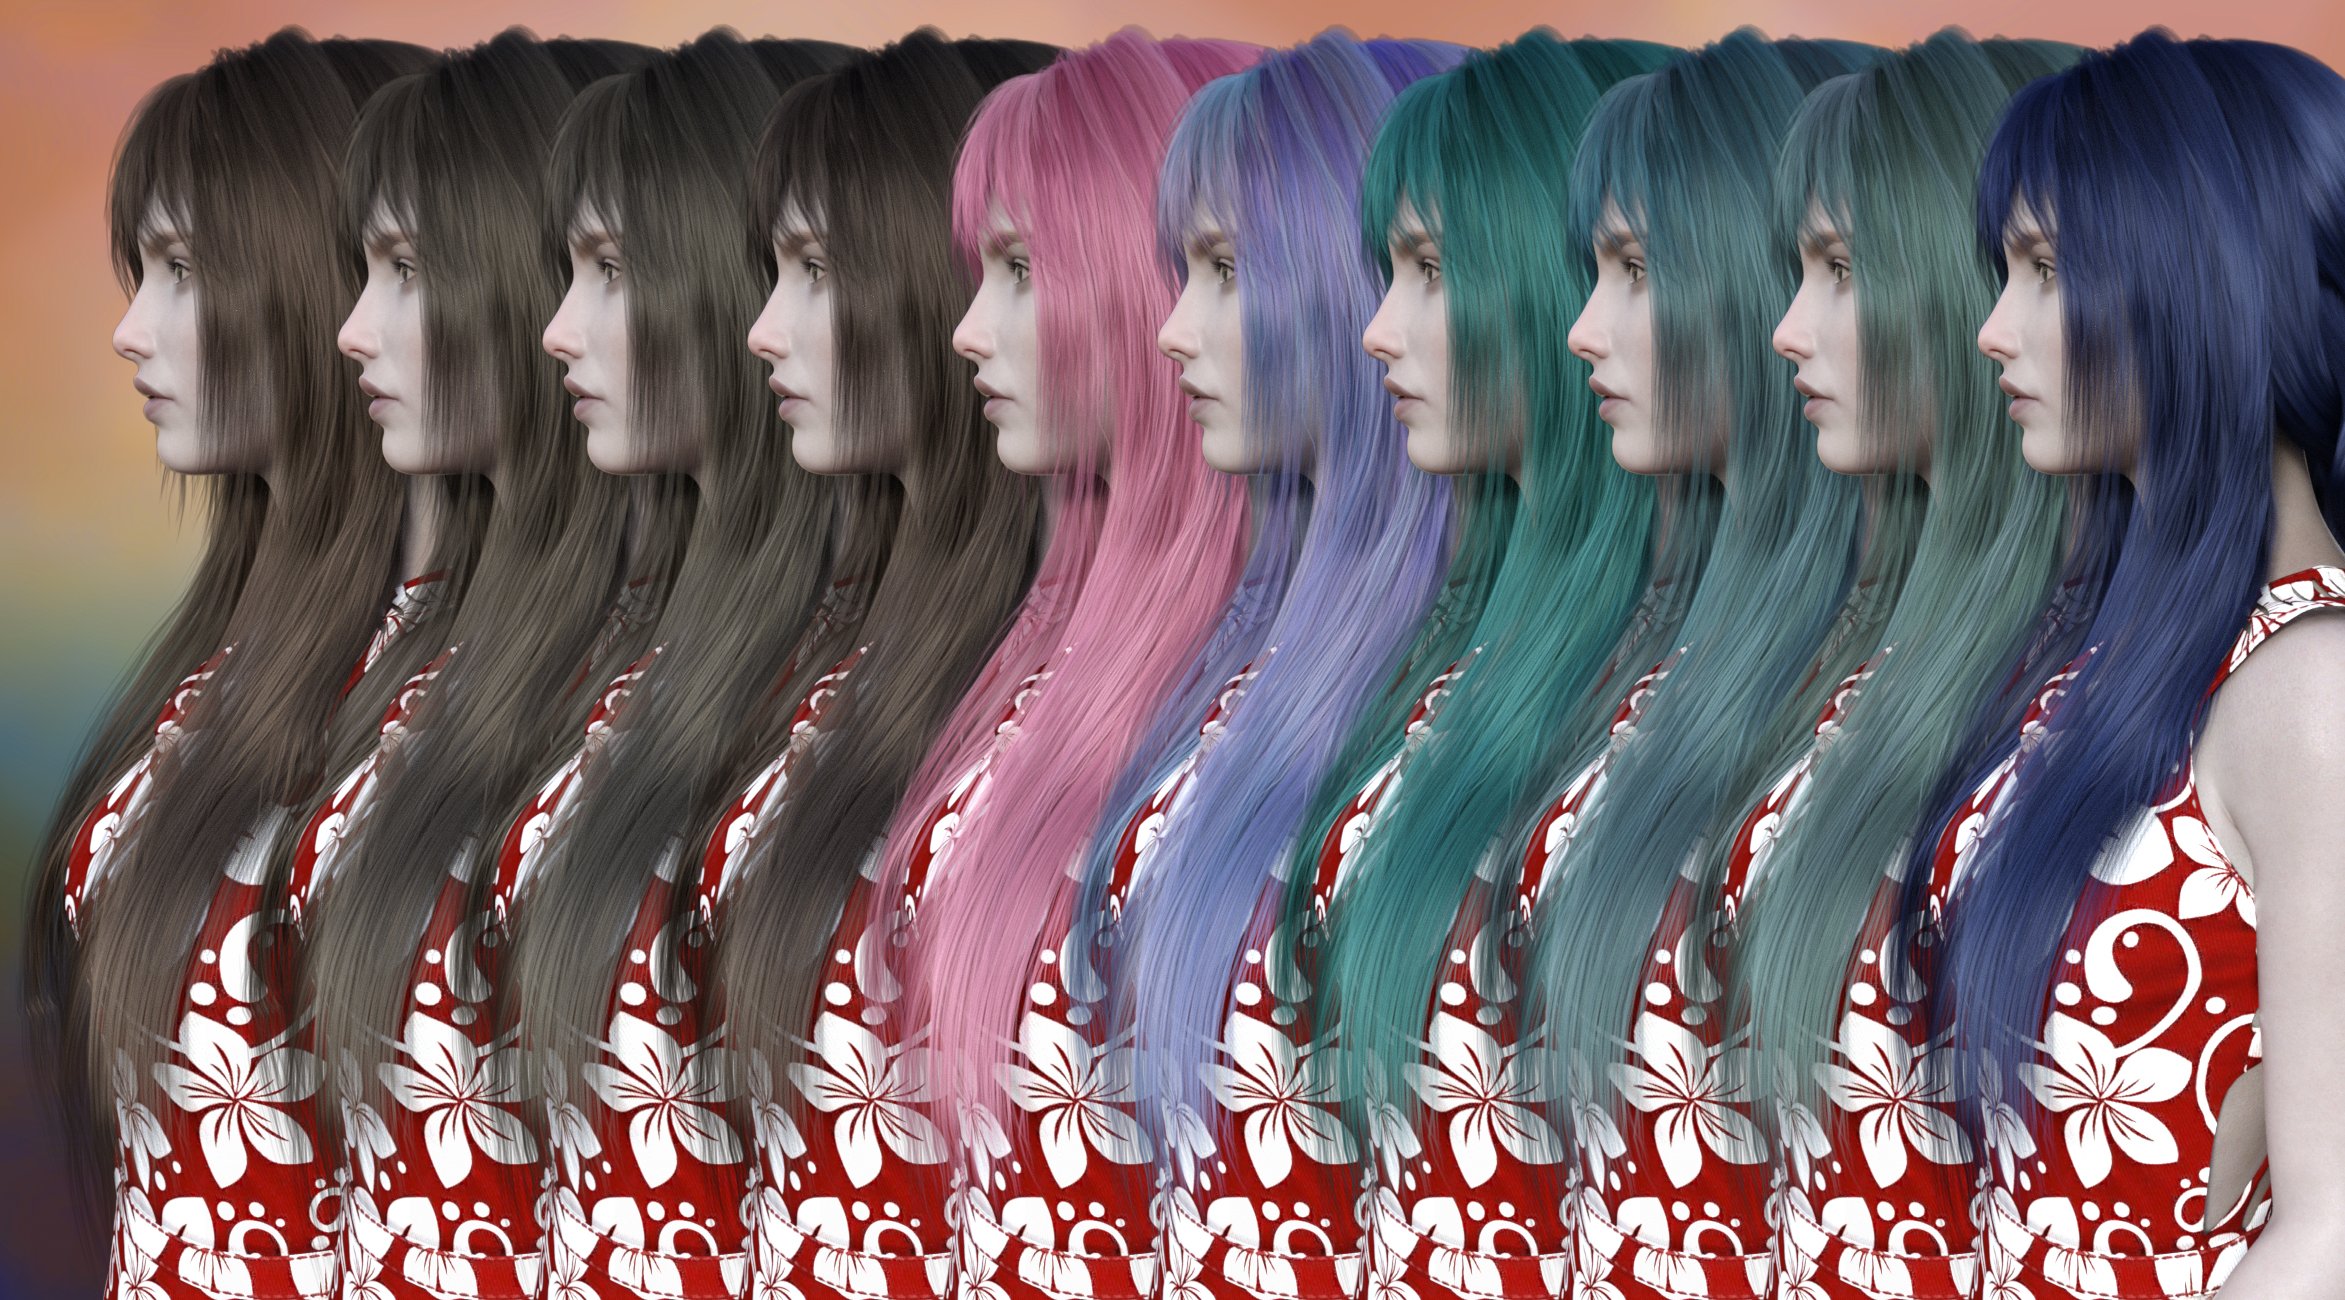 FE Long Hair Vol 01 for Genesis 8 Female by: FeSoul, 3D Models by Daz 3D